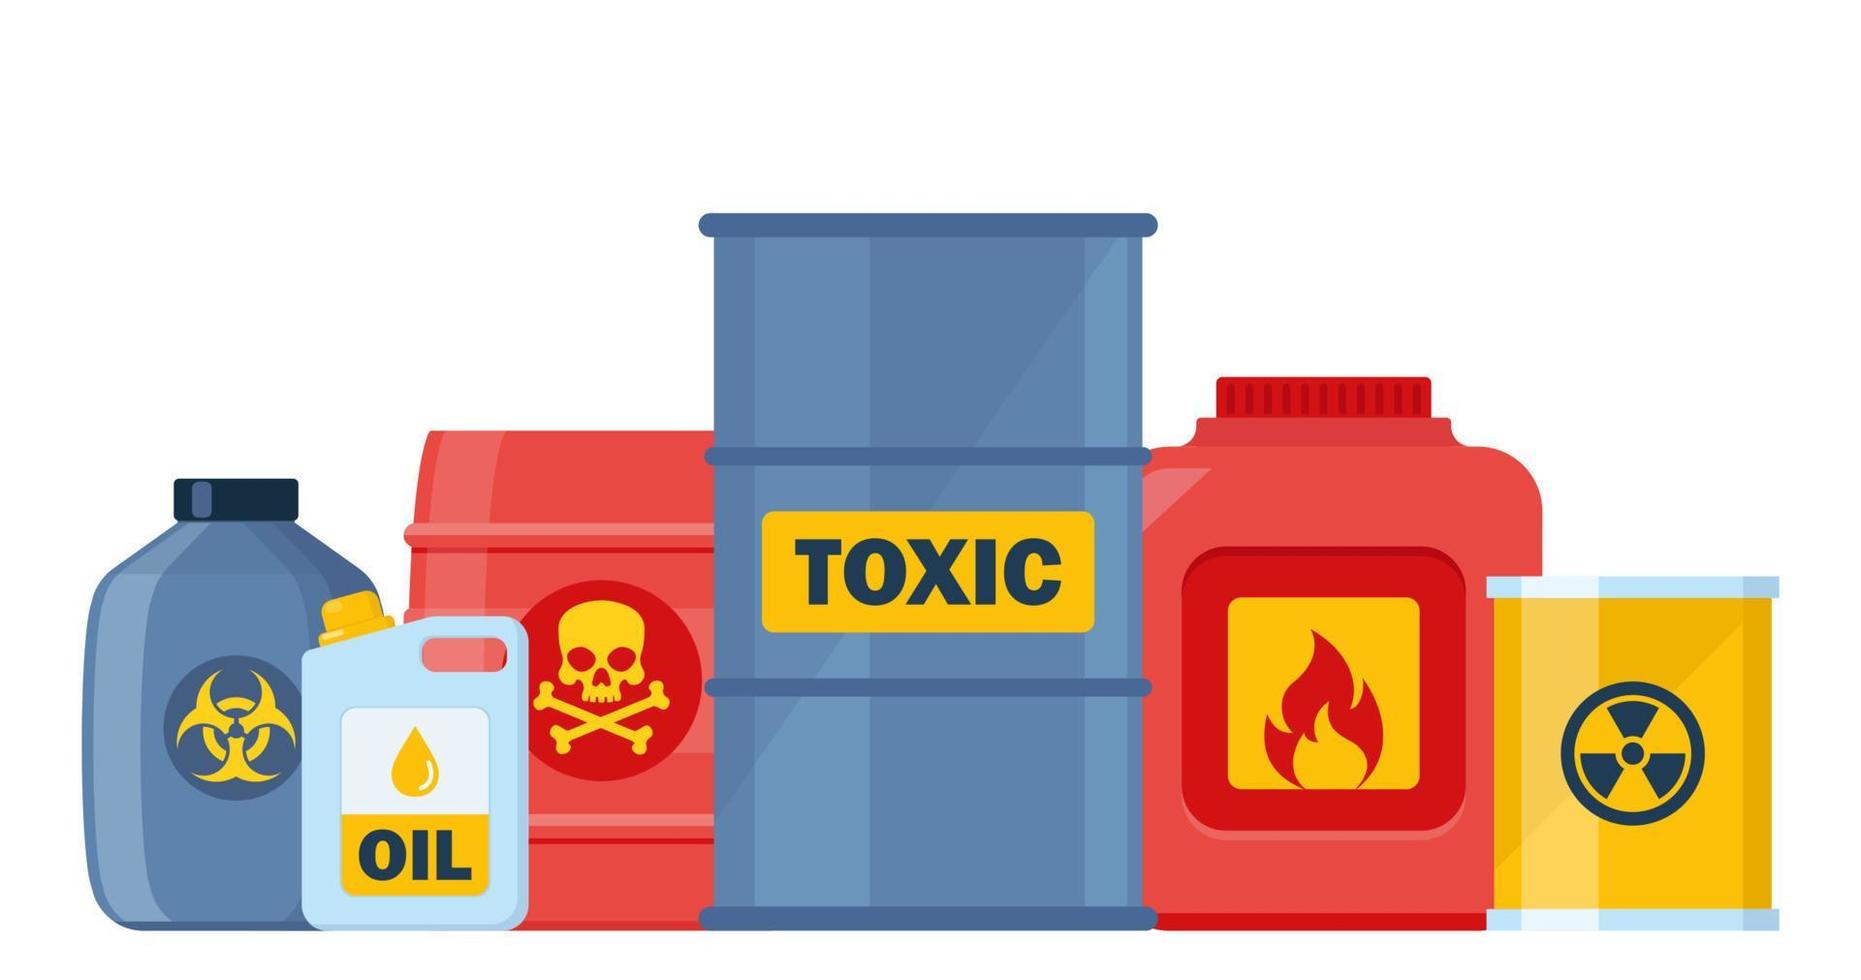 conjunto de recipientes com substâncias tóxicas e químicas. substâncias perigosas tóxicas, de risco biológico, radioativas e inflamáveis. ilustração vetorial. vetor